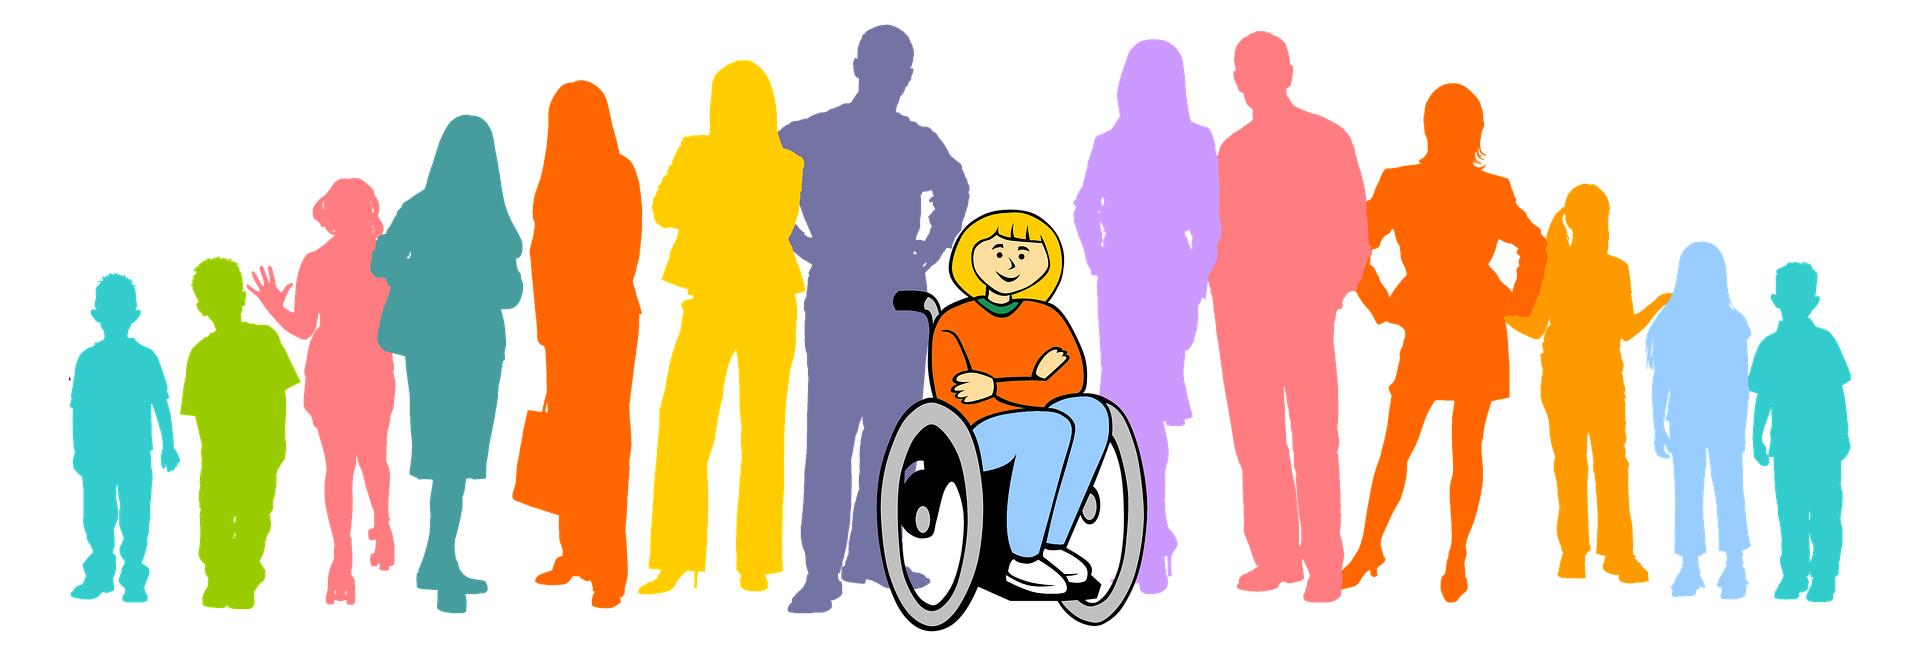 Право детей с инвалидностью. Люди с ограниченными возможностями картинки. Социализация людей с инвалидностью. Люди с ОВЗ. Общество инвалидов.